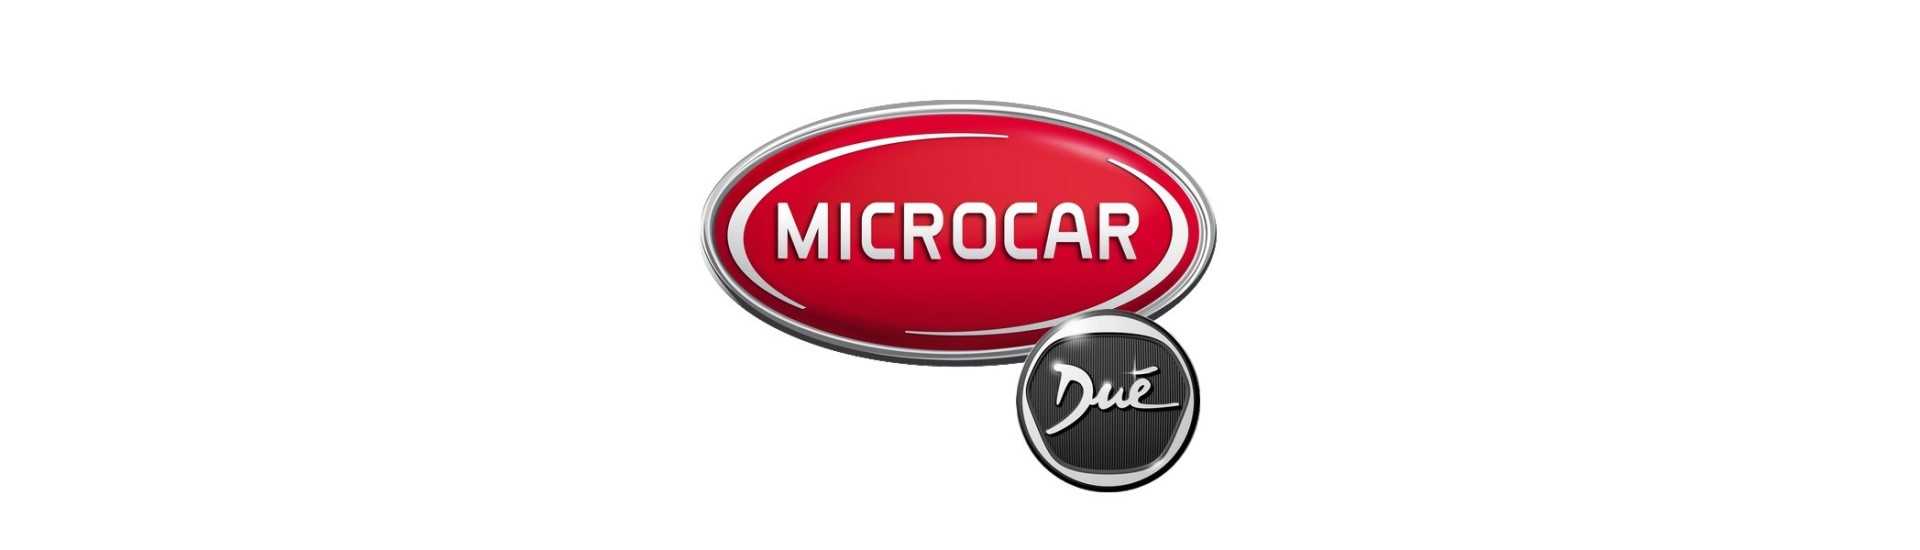 Libro de servicio al mejor precio coche sin permiso Microcar Dué